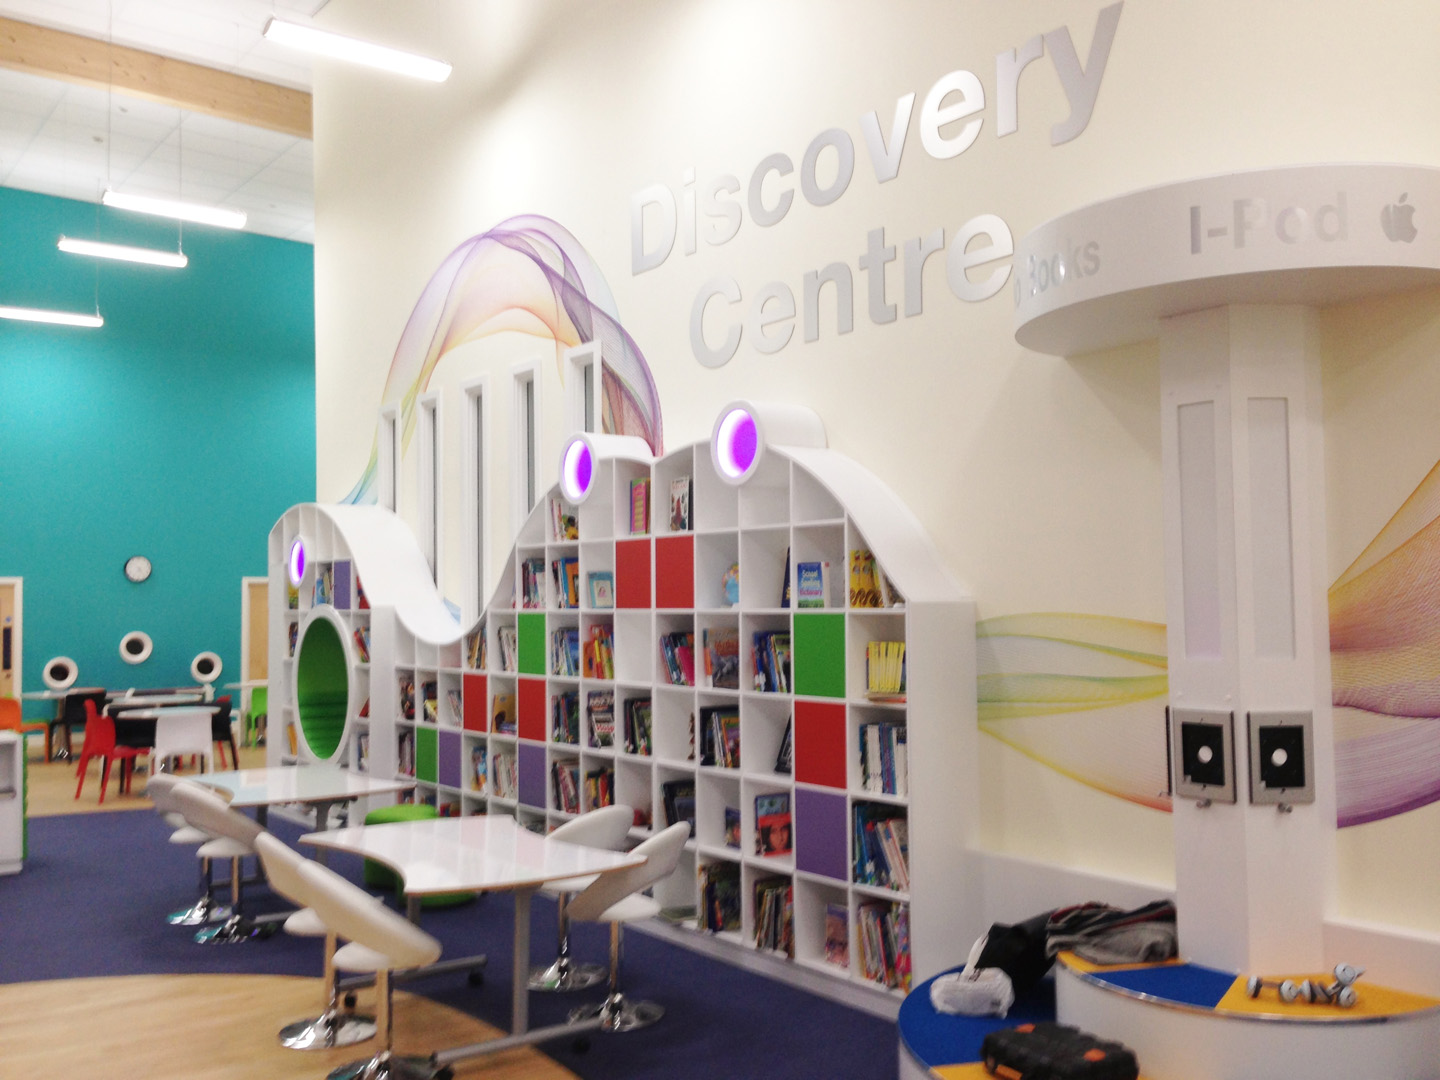 Discovery Centre - School Interior Design